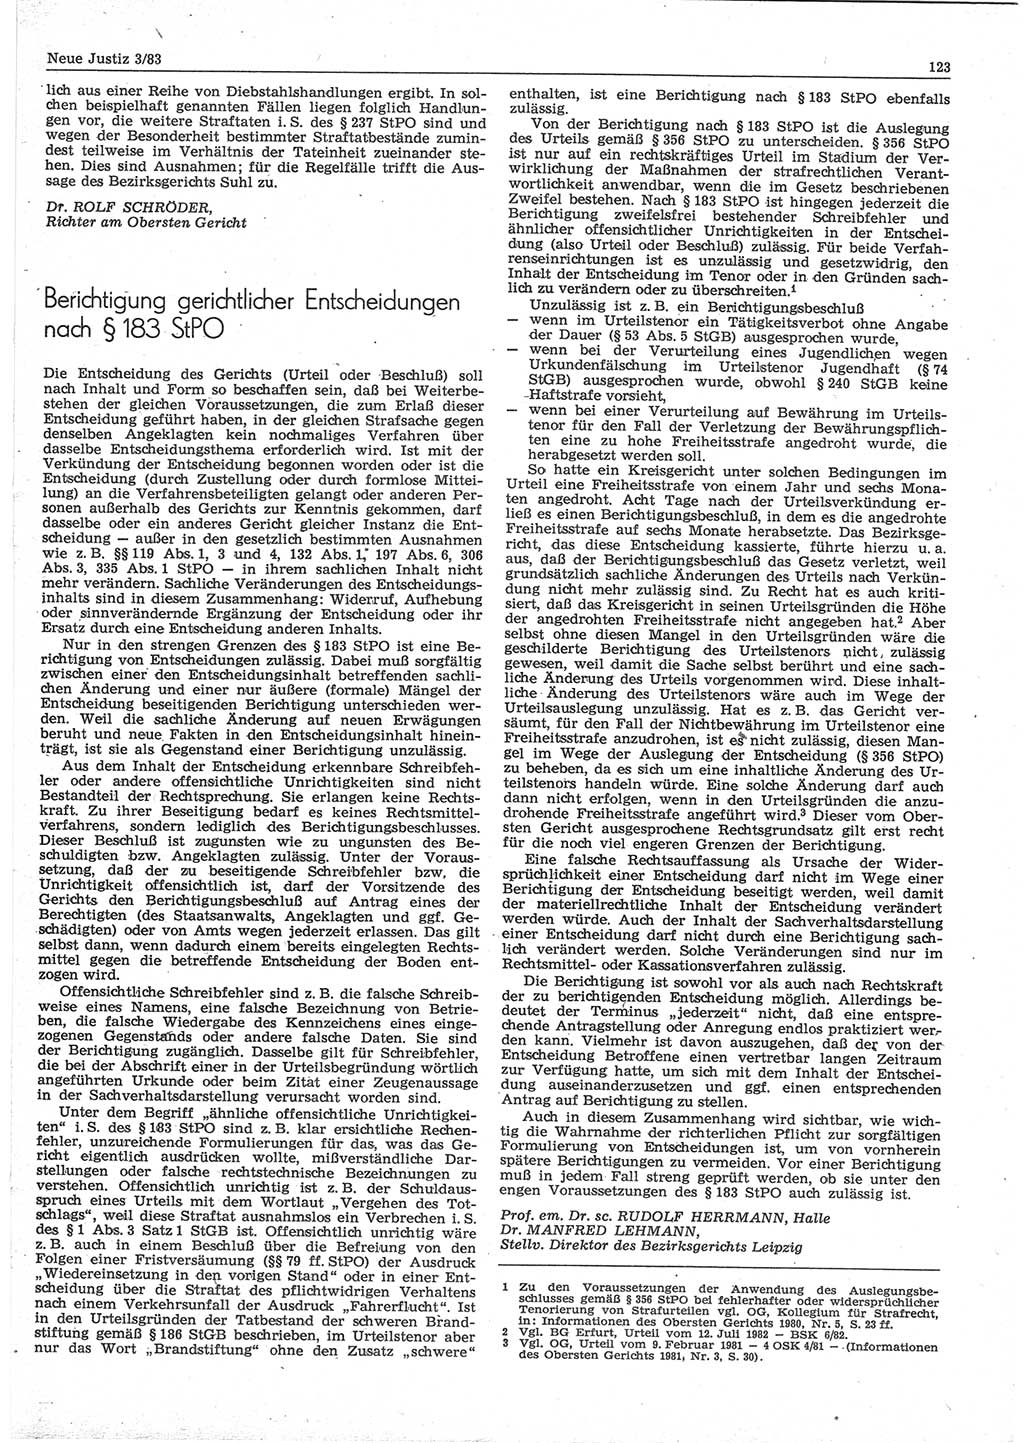 Neue Justiz (NJ), Zeitschrift für sozialistisches Recht und Gesetzlichkeit [Deutsche Demokratische Republik (DDR)], 37. Jahrgang 1983, Seite 123 (NJ DDR 1983, S. 123)